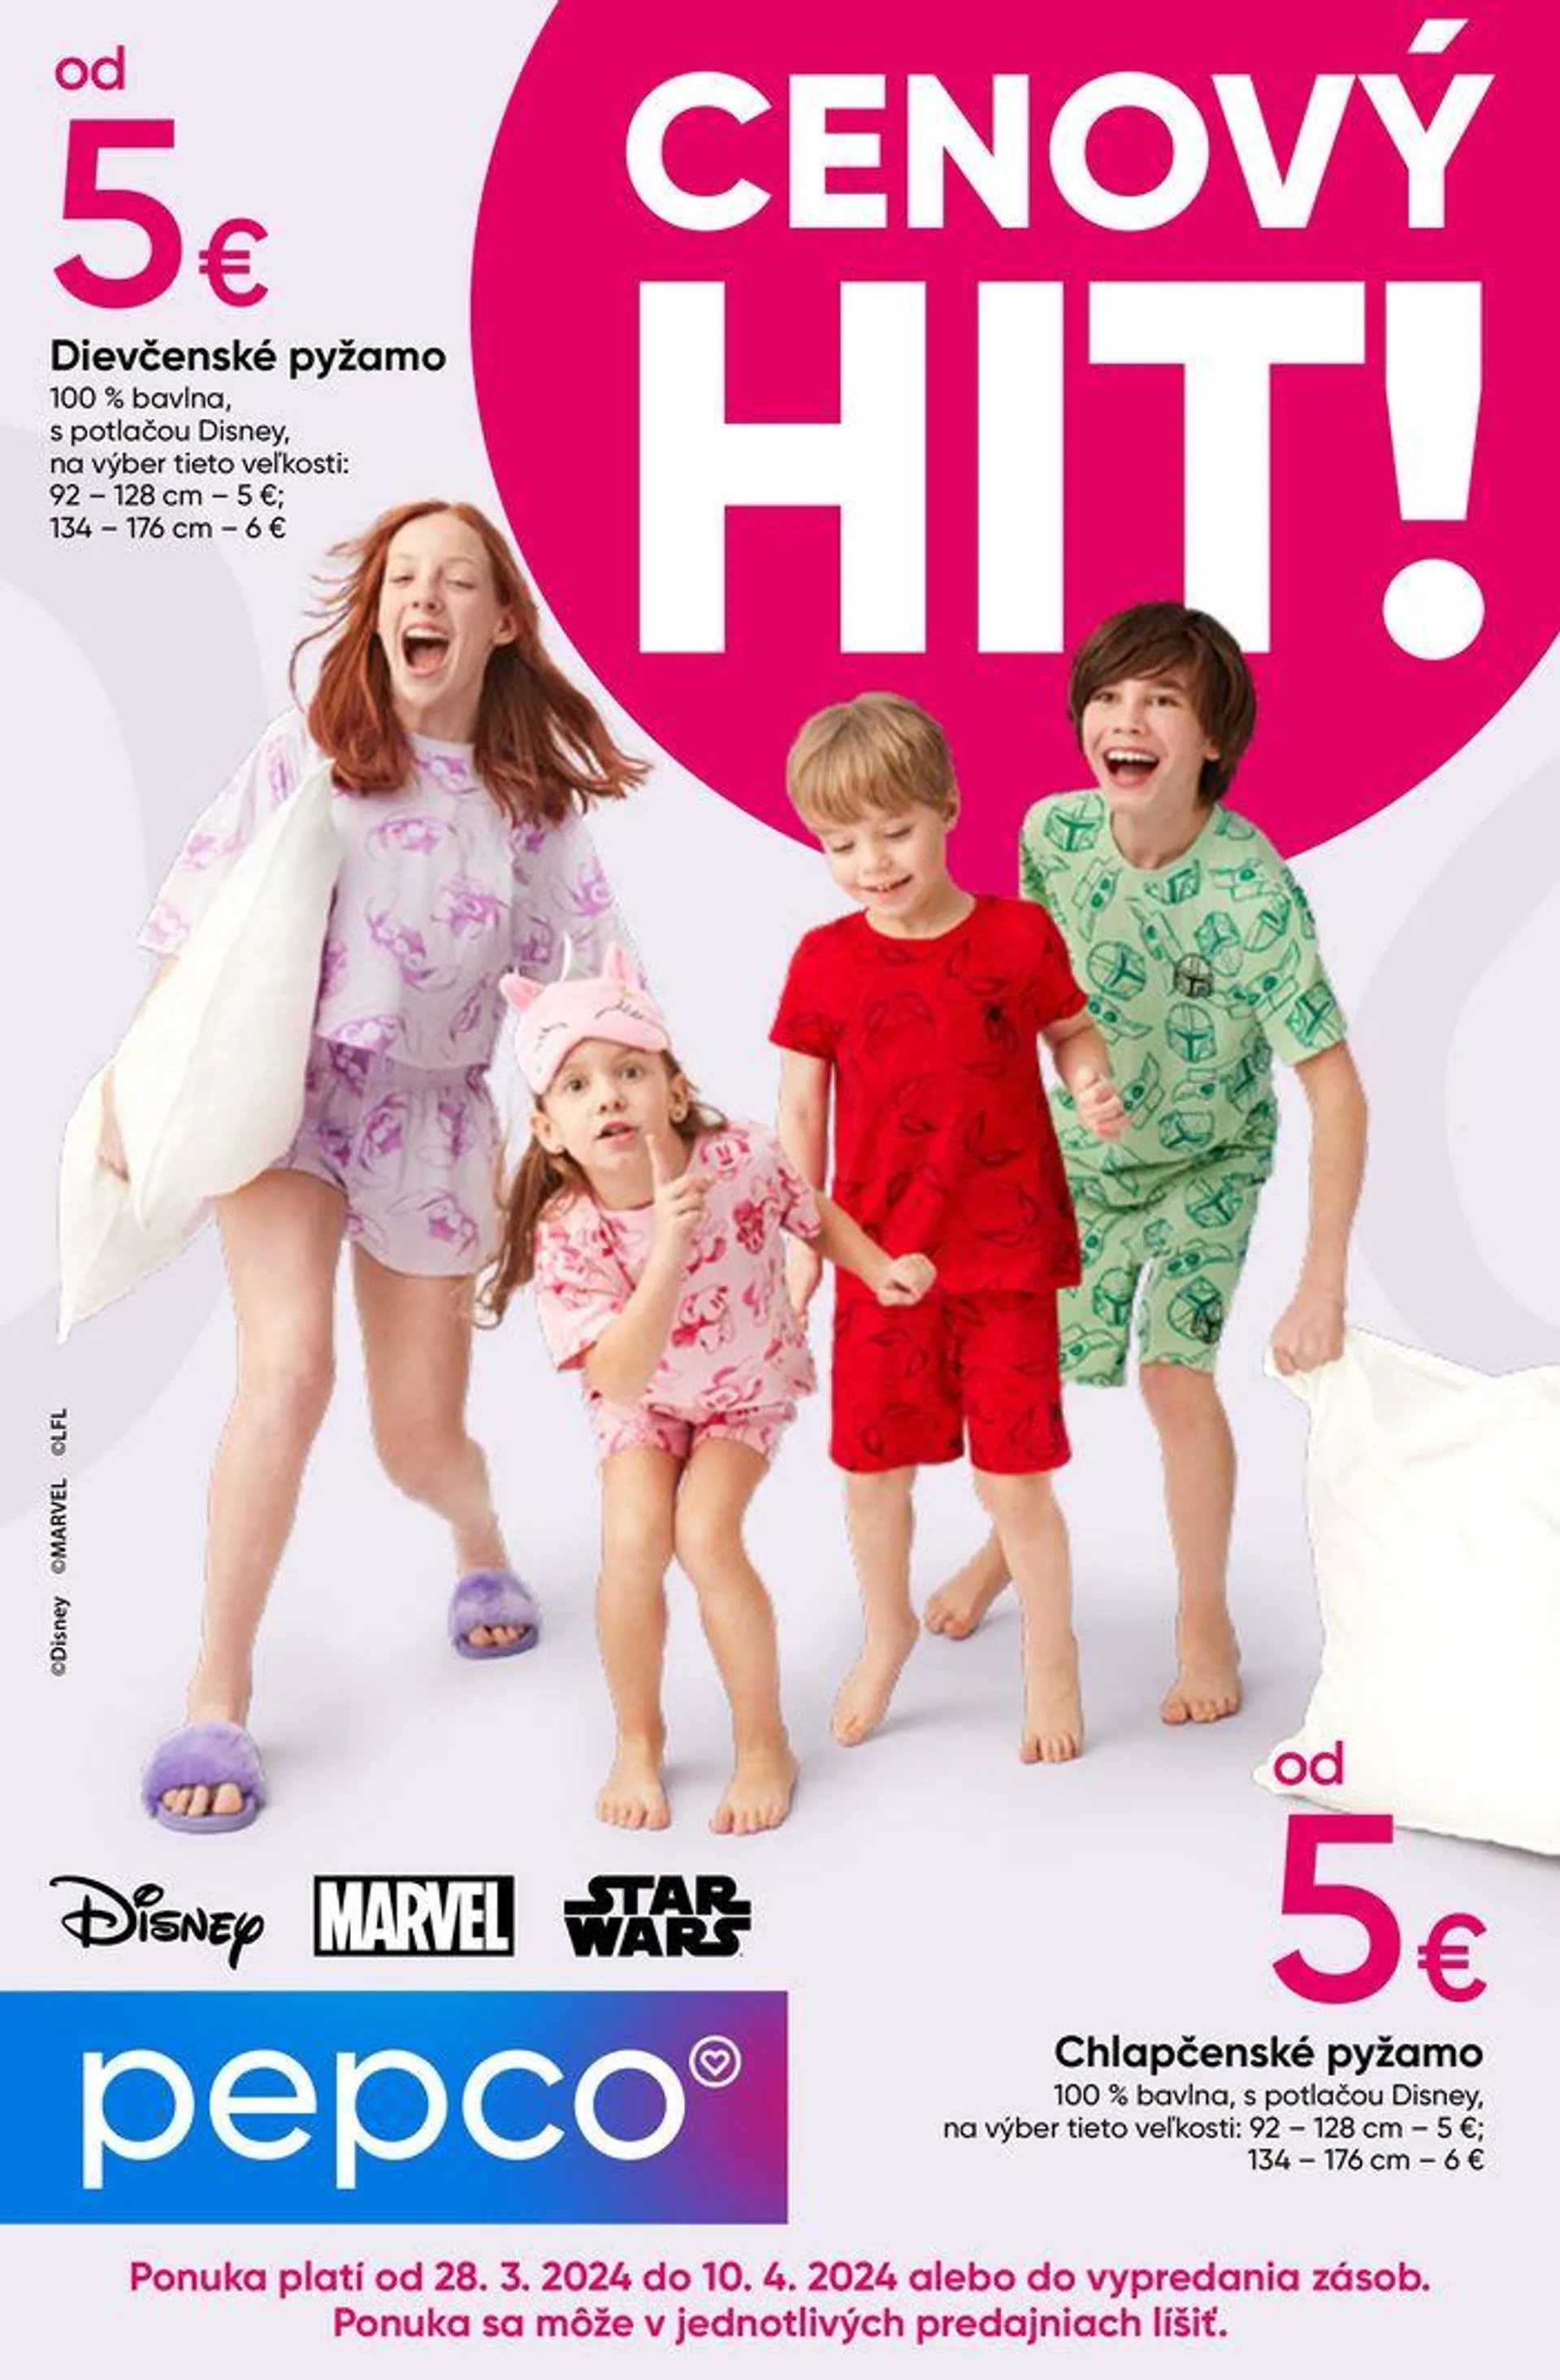 Detské pyžamá Disney - 1